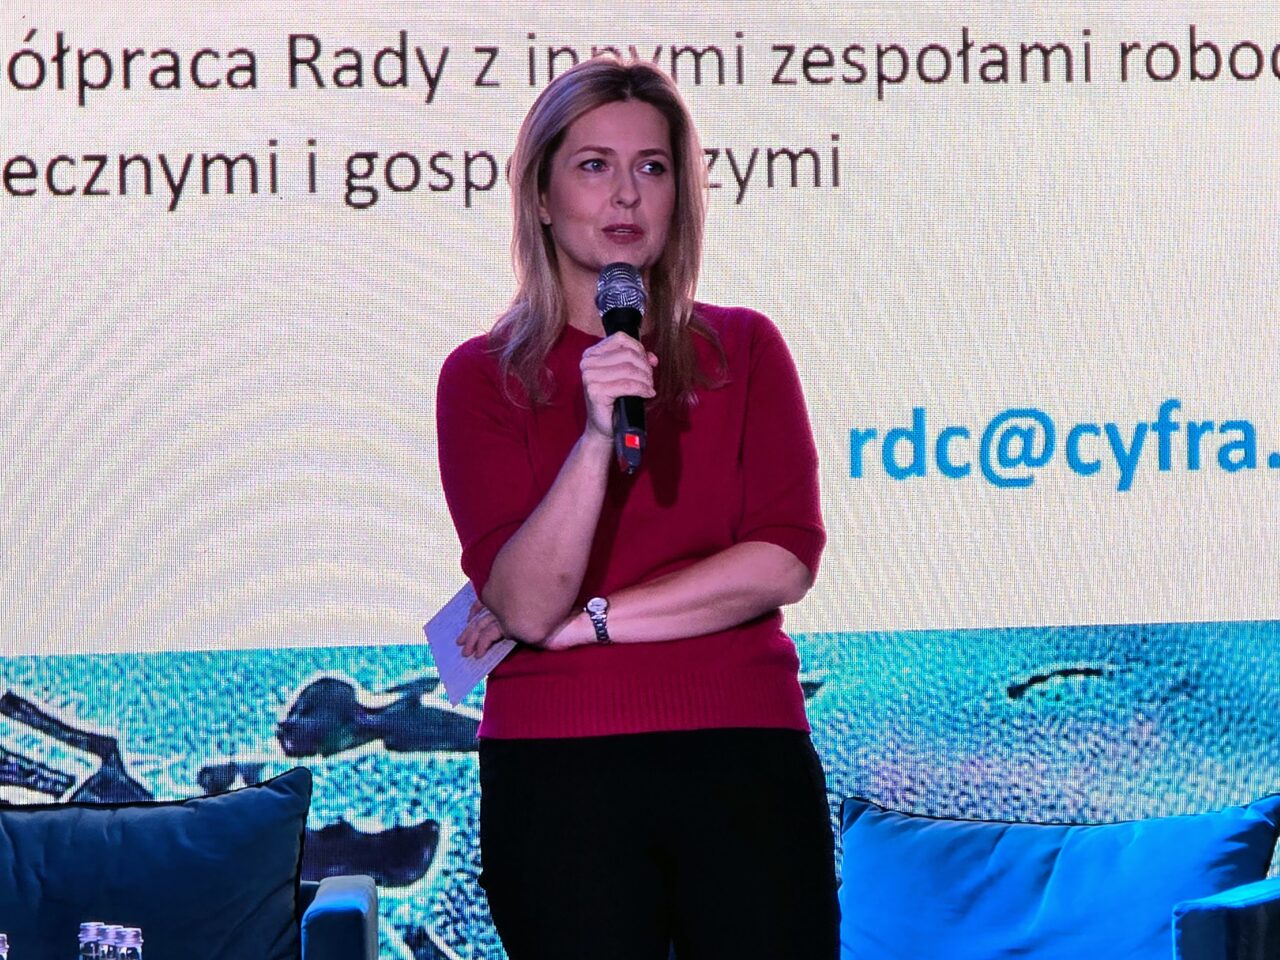 Przewodnicząca Rady ds. Cyfryzacji Agnieszka Jankowska podczas 16. FG Time. Kobieta stojąca na scenie trzyma mikrofon i prezentuje się przed wielkim ekranem z projekcją tekstu.